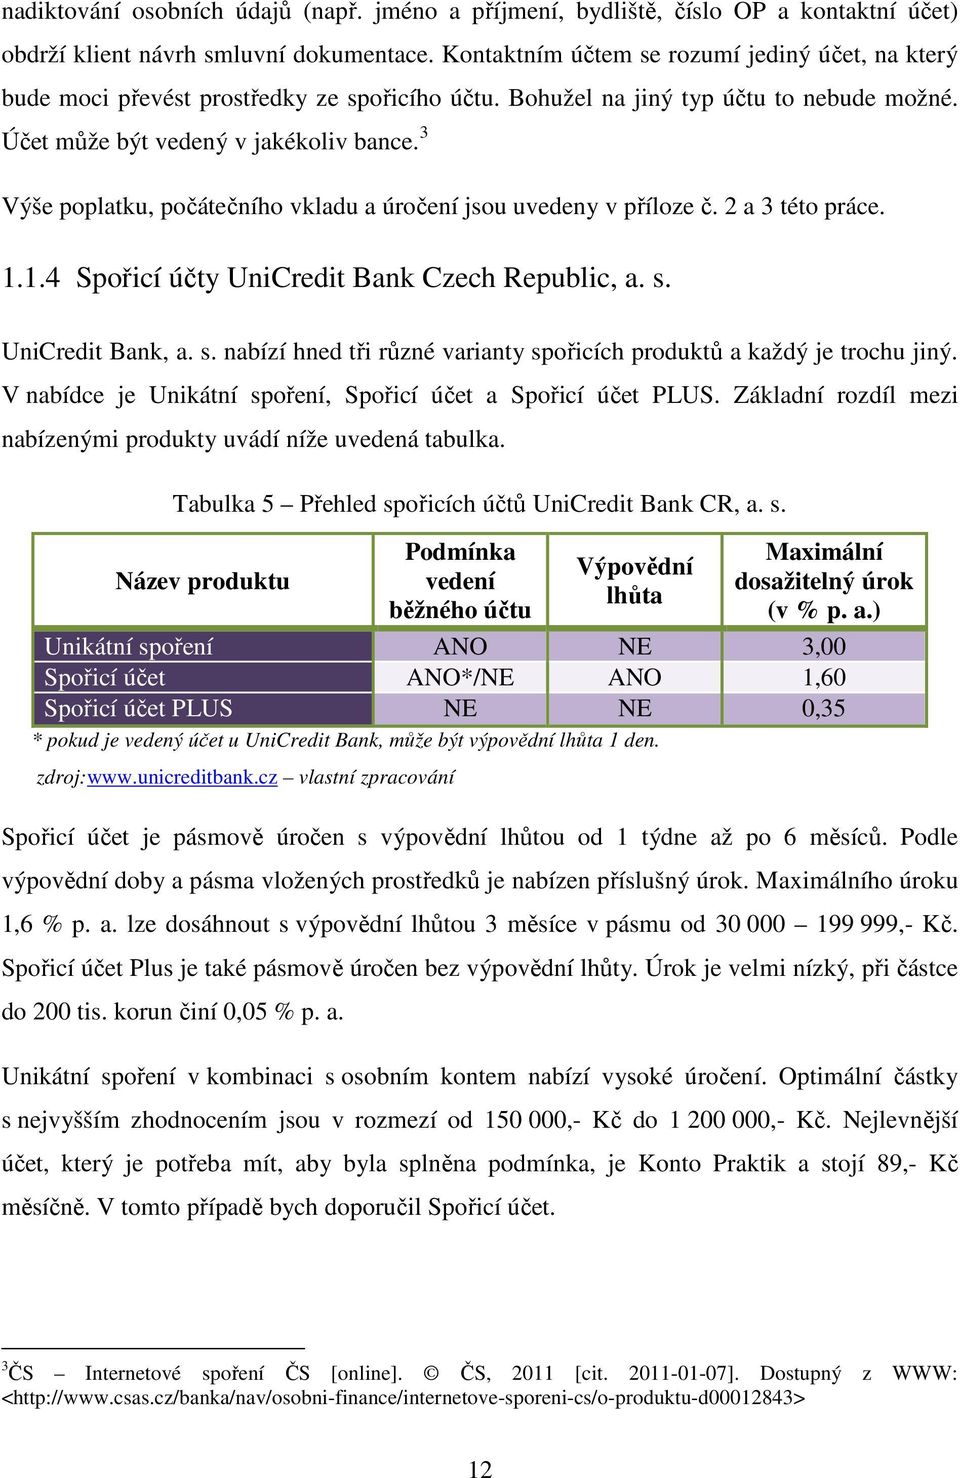 3 Výše poplatku, počátečního vkladu a úročení jsou uvedeny v příloze č. 2 a 3 této práce. 1.1.4 Spořicí účty UniCredit Bank Czech Republic, a. s.